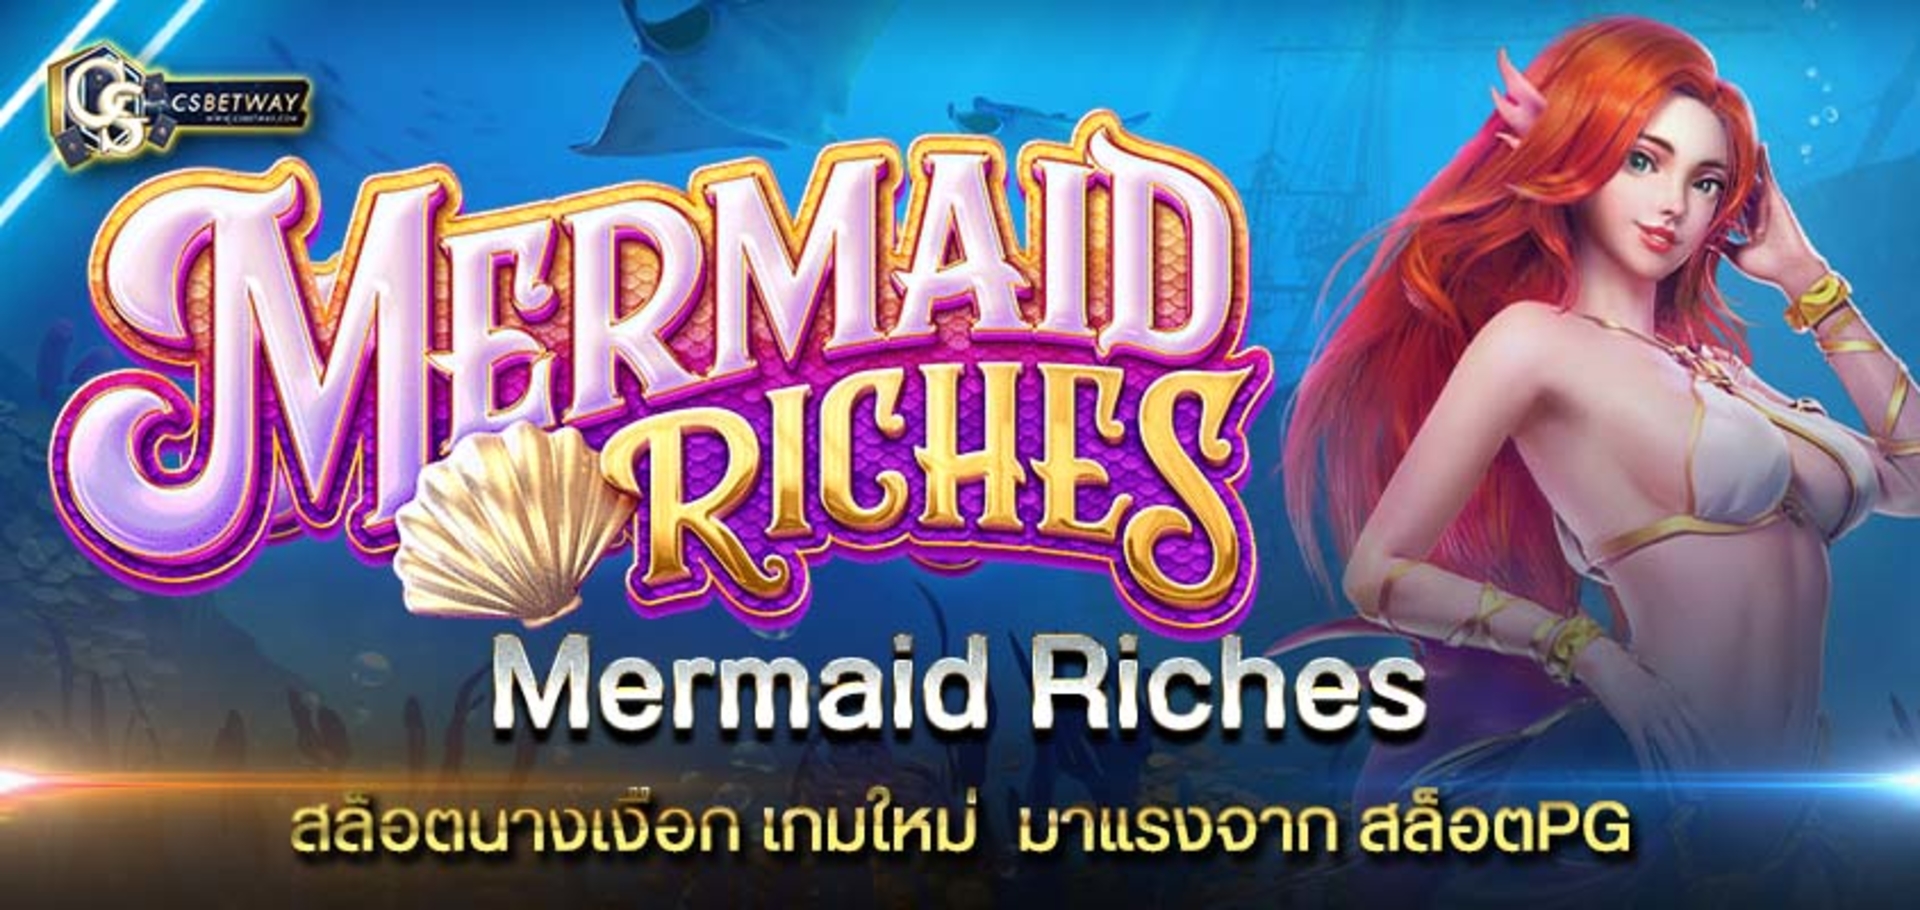 Mermaid Riches สล็อตนางเงือก เกมใหม่  มาแรงจาก สล็อตPG เกมสล็อตออนไลน์ PG SLOT สล็อตพีจี